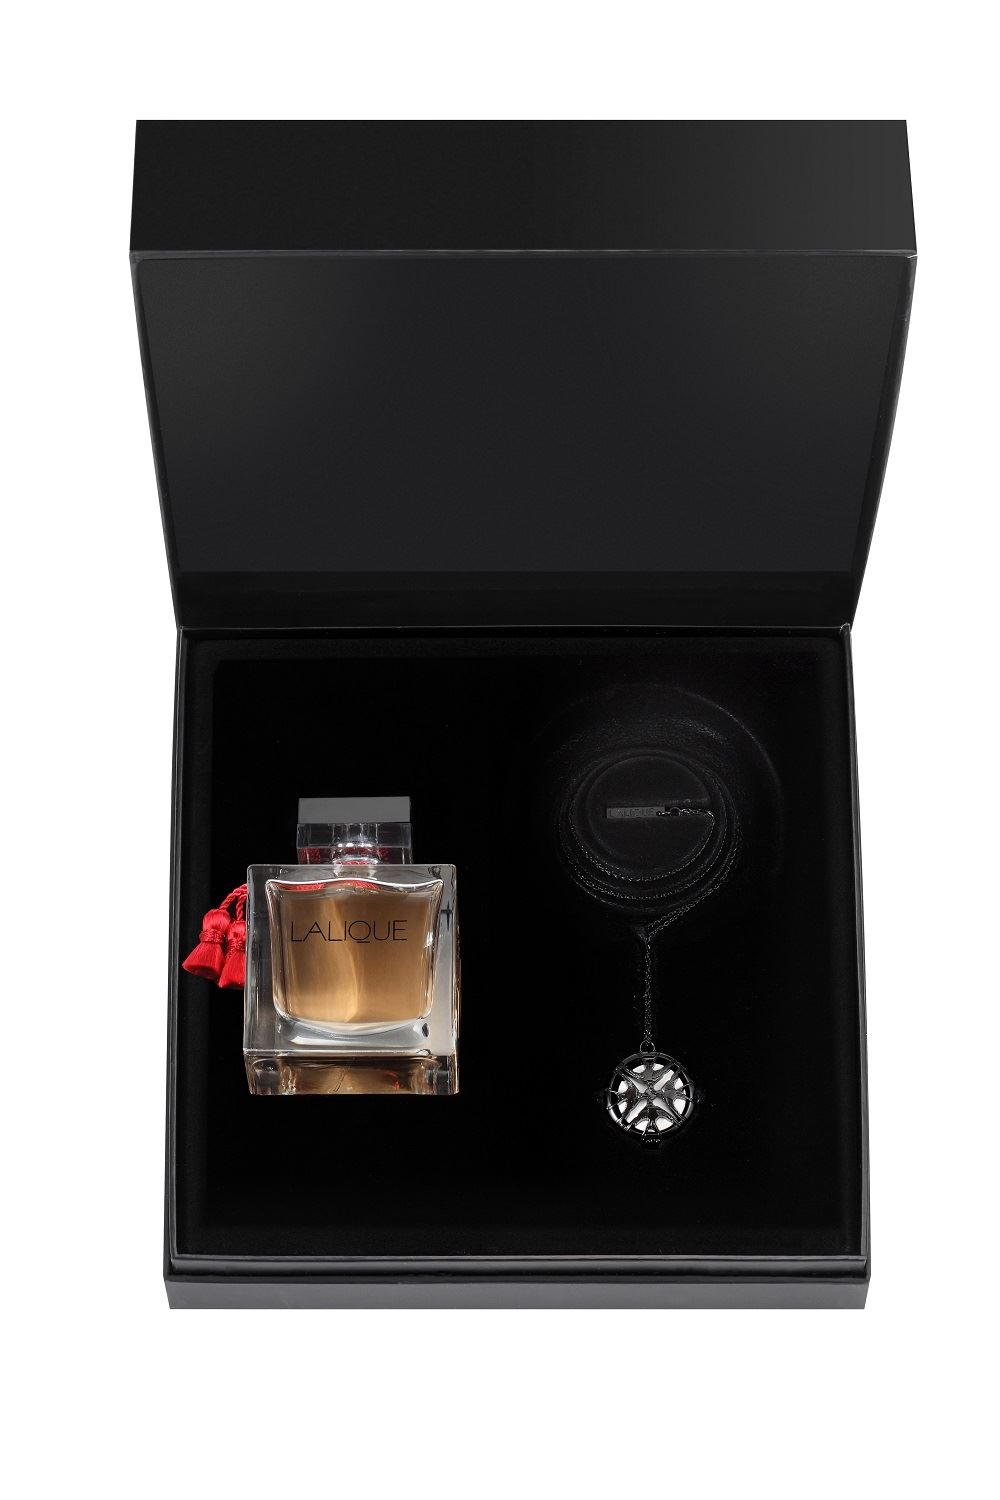 Image of Lalique Le Parfum Set Eau De Parfum 100ml + Collana